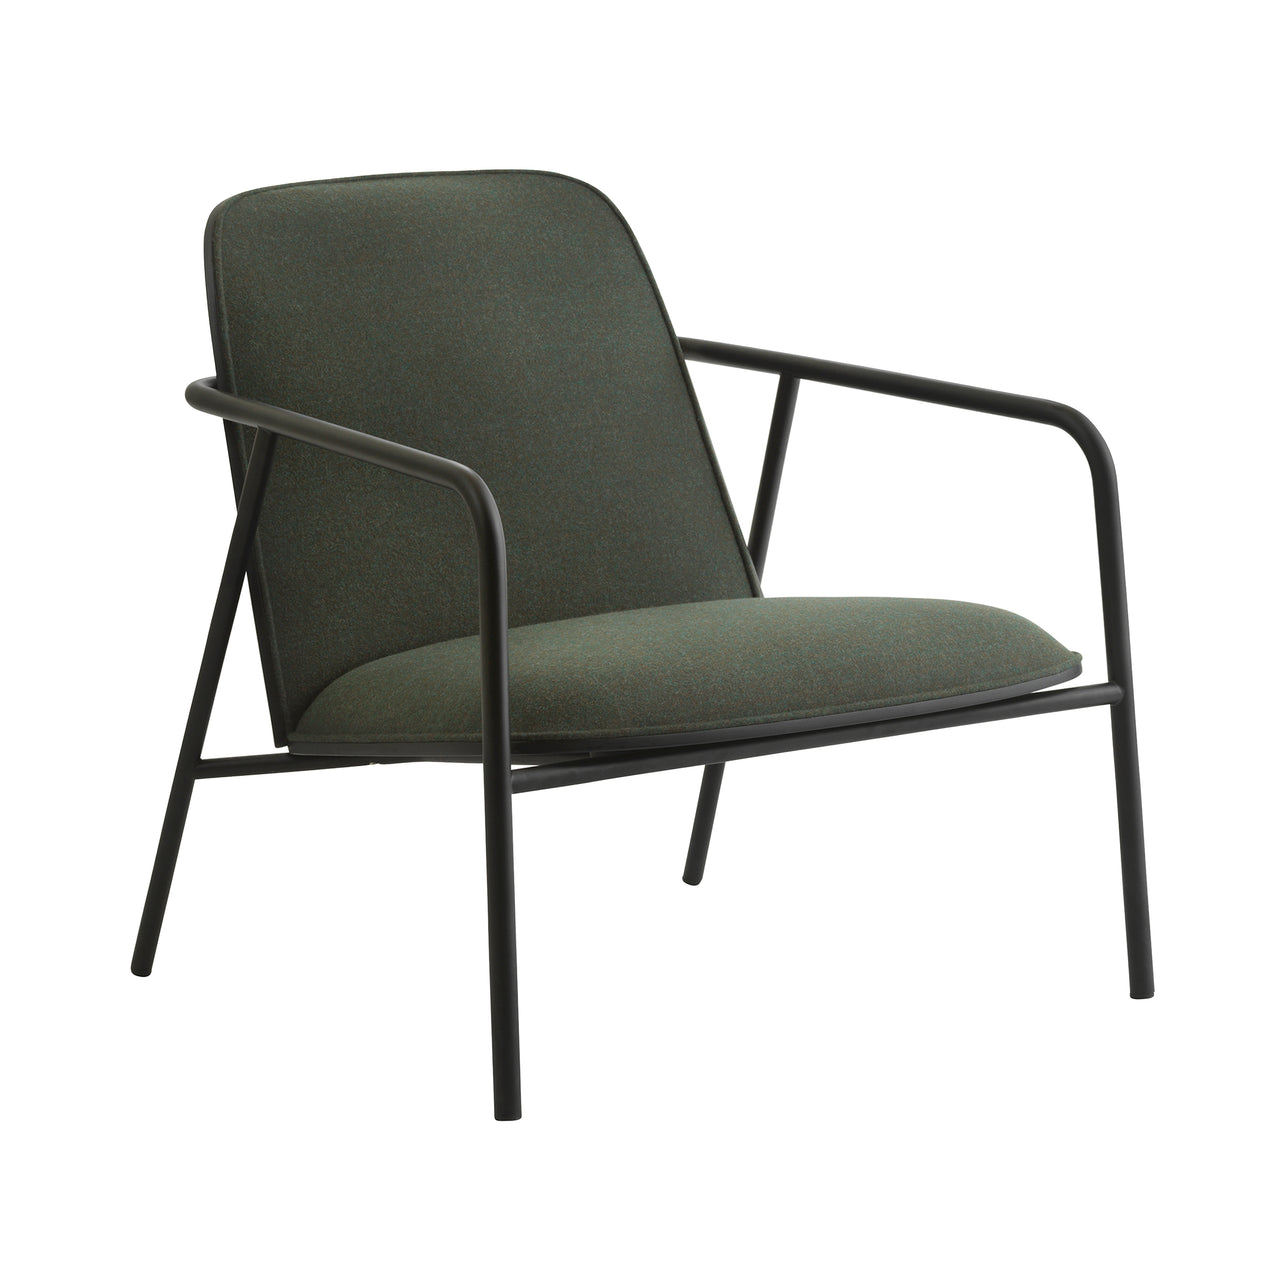 Pad Lounge Chair: Low + Black Steel + Black